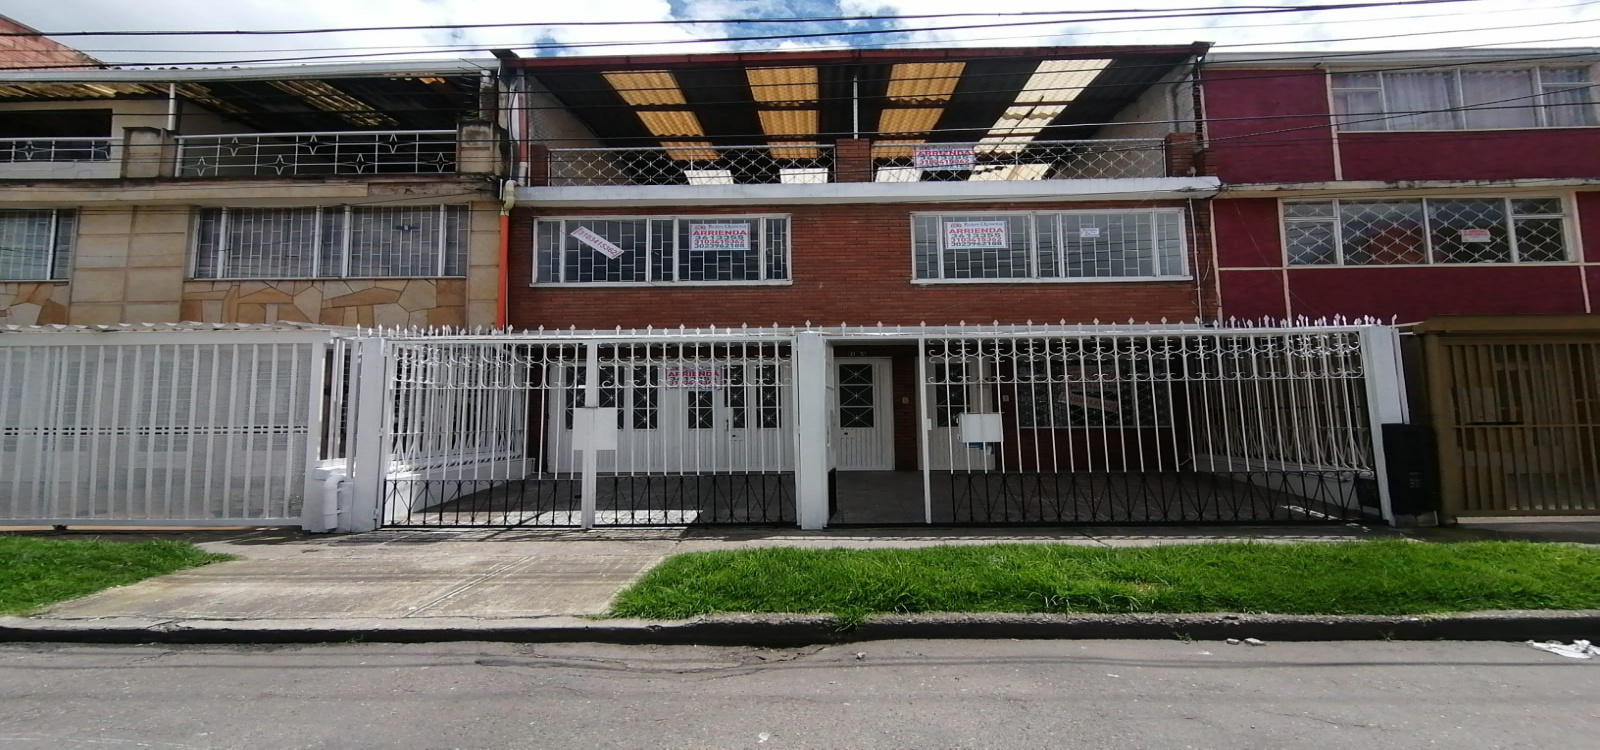 31-12 1 H, Bogotá, Occidente, La Asunción, 6 Habitaciones Habitaciones,5 BathroomsBathrooms,Casas,Venta,1 H,3307